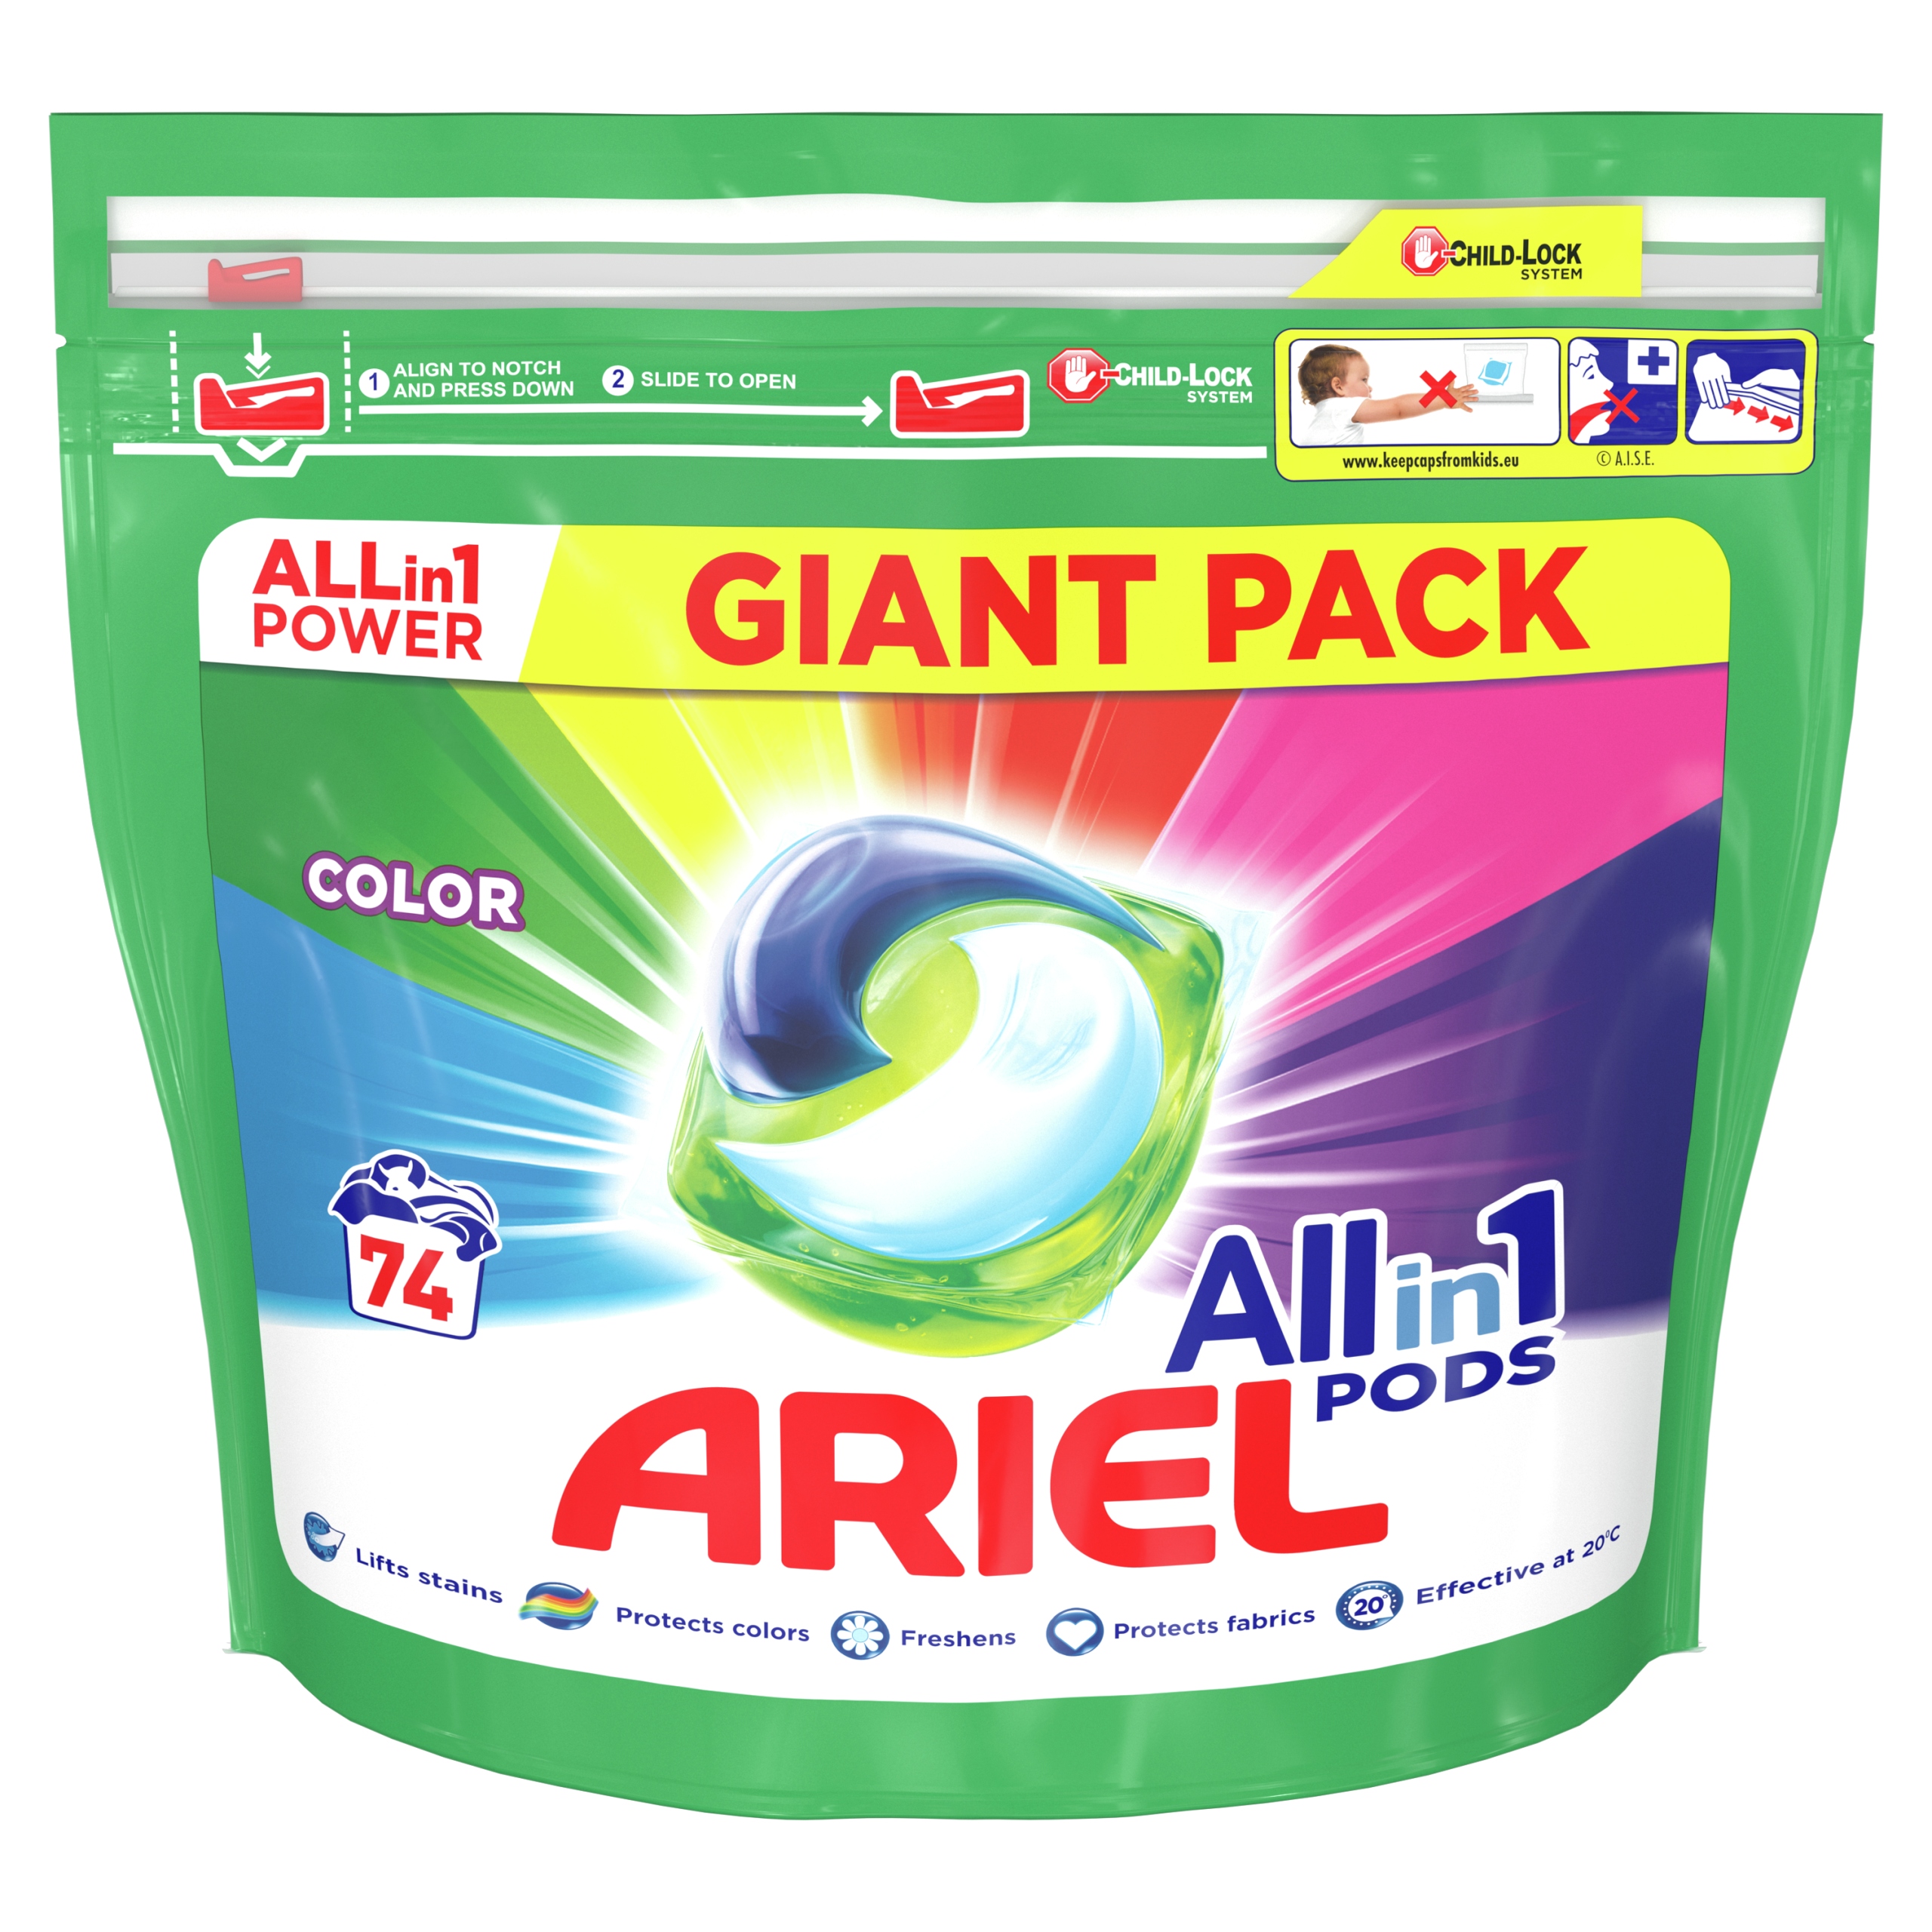 Promocja Ariel kapsułki do prania Color 74 szt wyprzedaż przecena